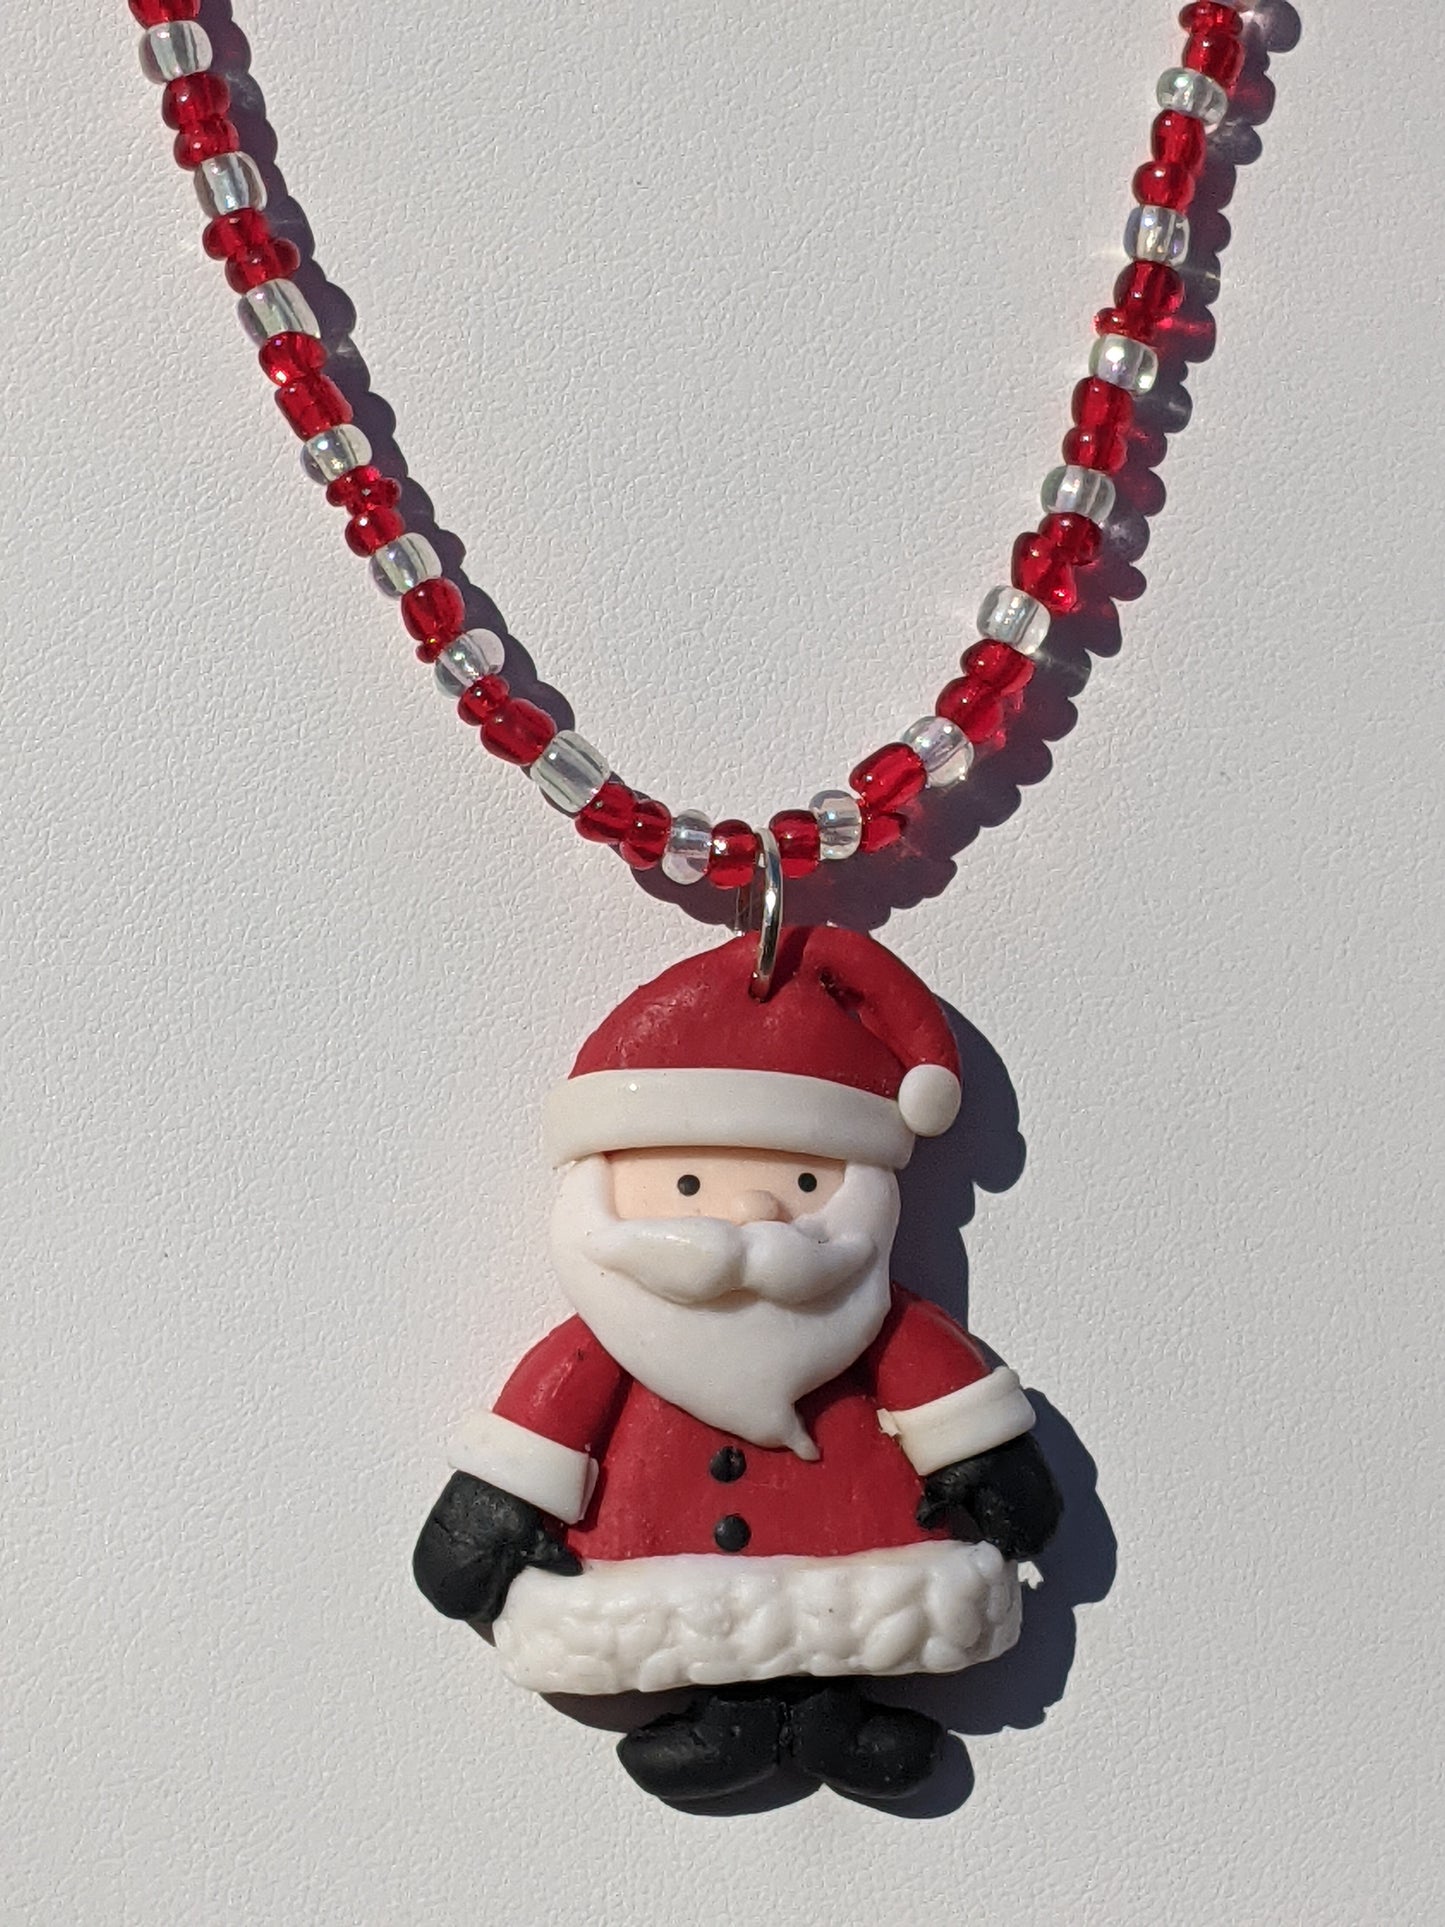 Red Clay Santa Necklace